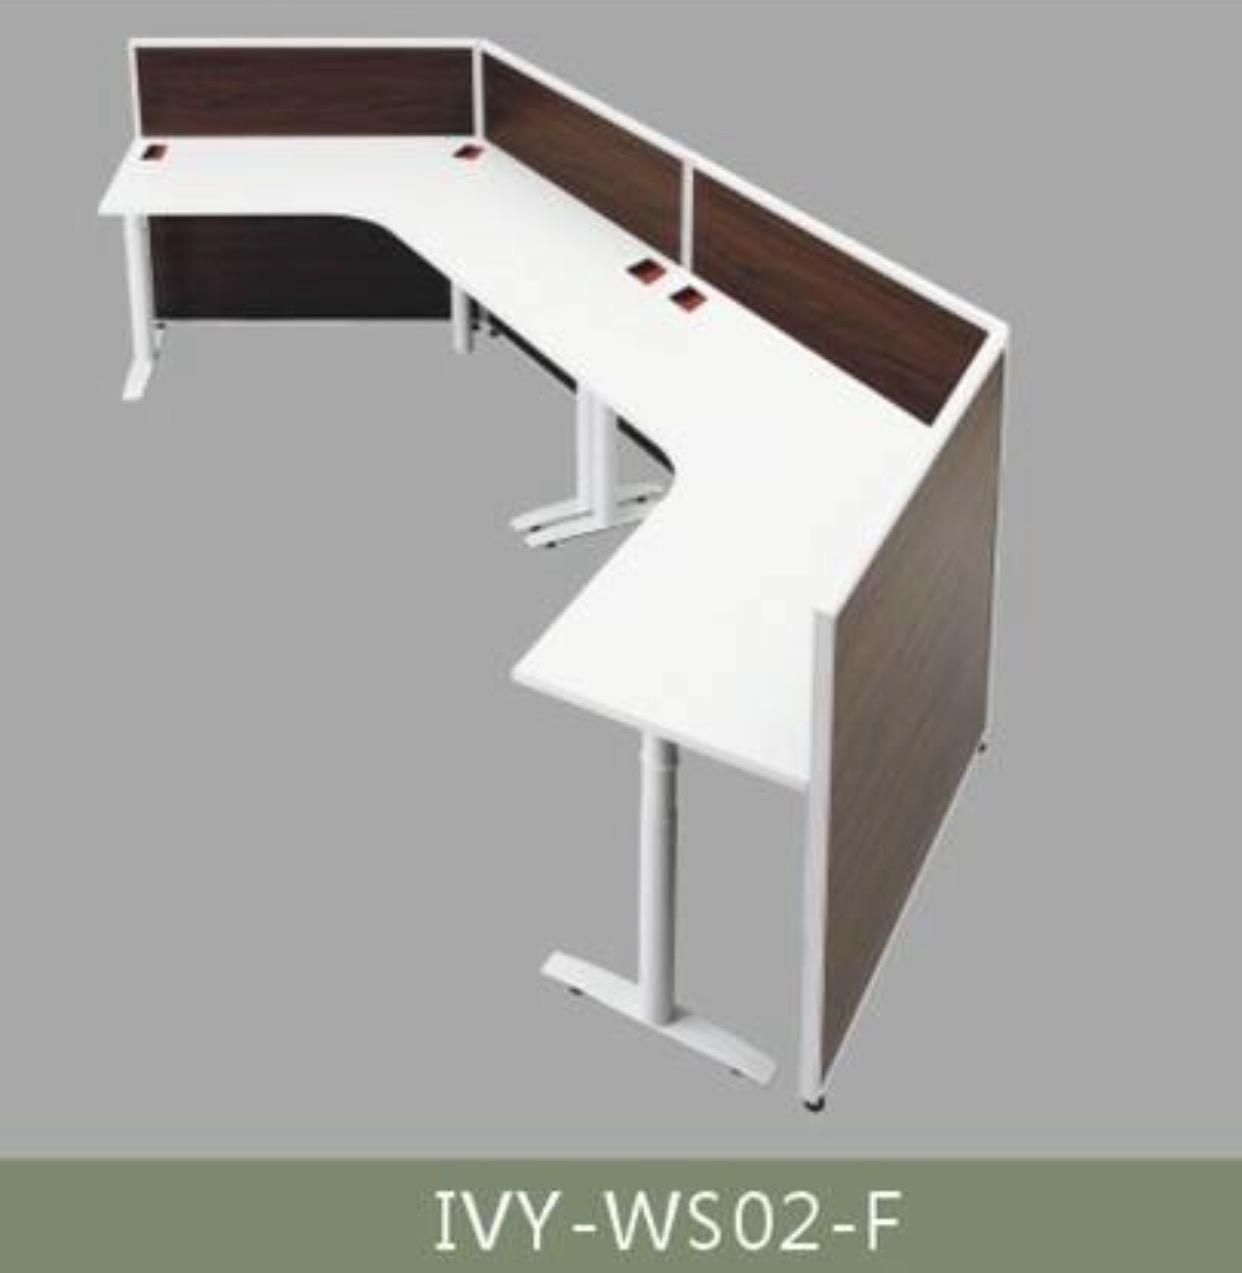 โต๊ะอเนกประสงค์พร้อมพาทิชั่น IVY-WS02-F